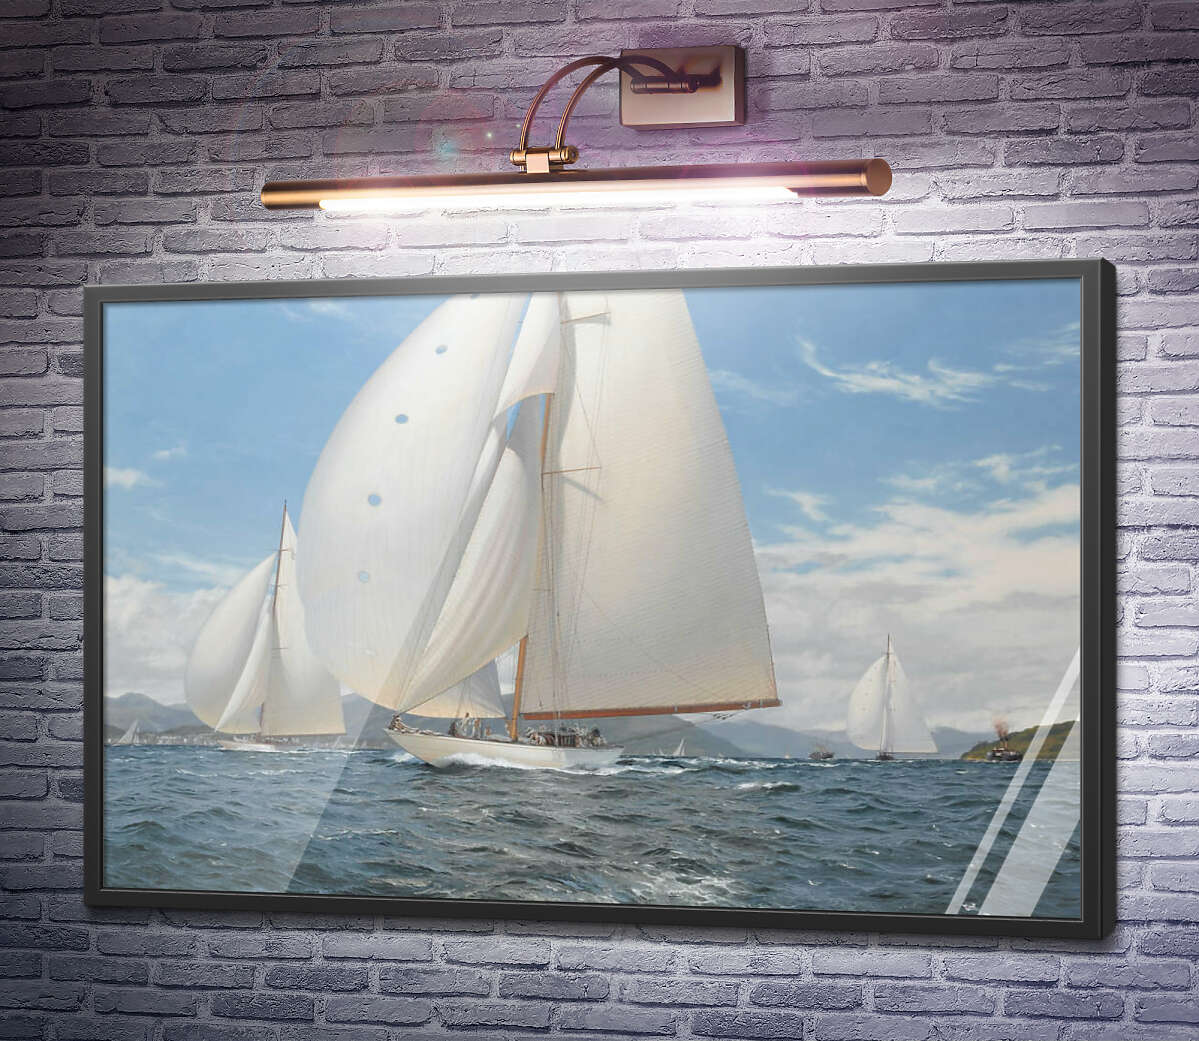 Постер Яхта Вельшеда на всіх вітрилах Стівен Дьюз